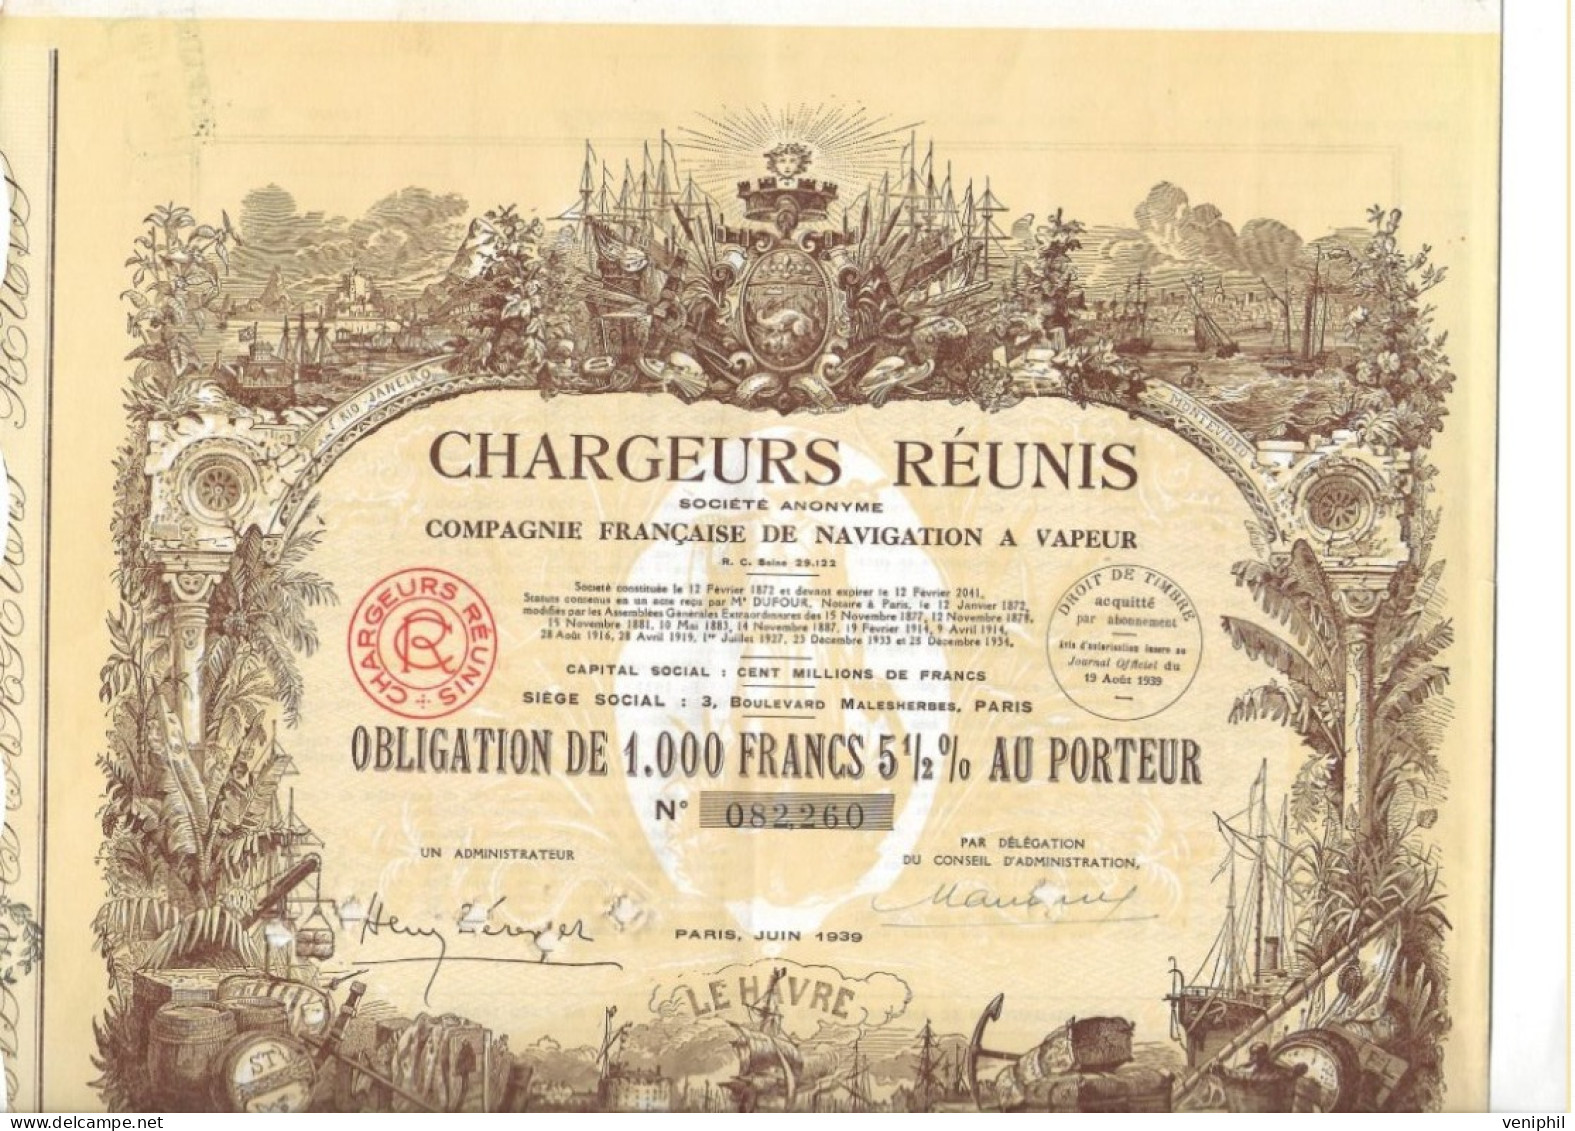 CHARGEURS REUNIS - COMPAGNIE FRANCAISE DE NAVIGATION A VAPEUR -OBLIGATION DE 1000 FRS- ANNEE 1939 - Navy